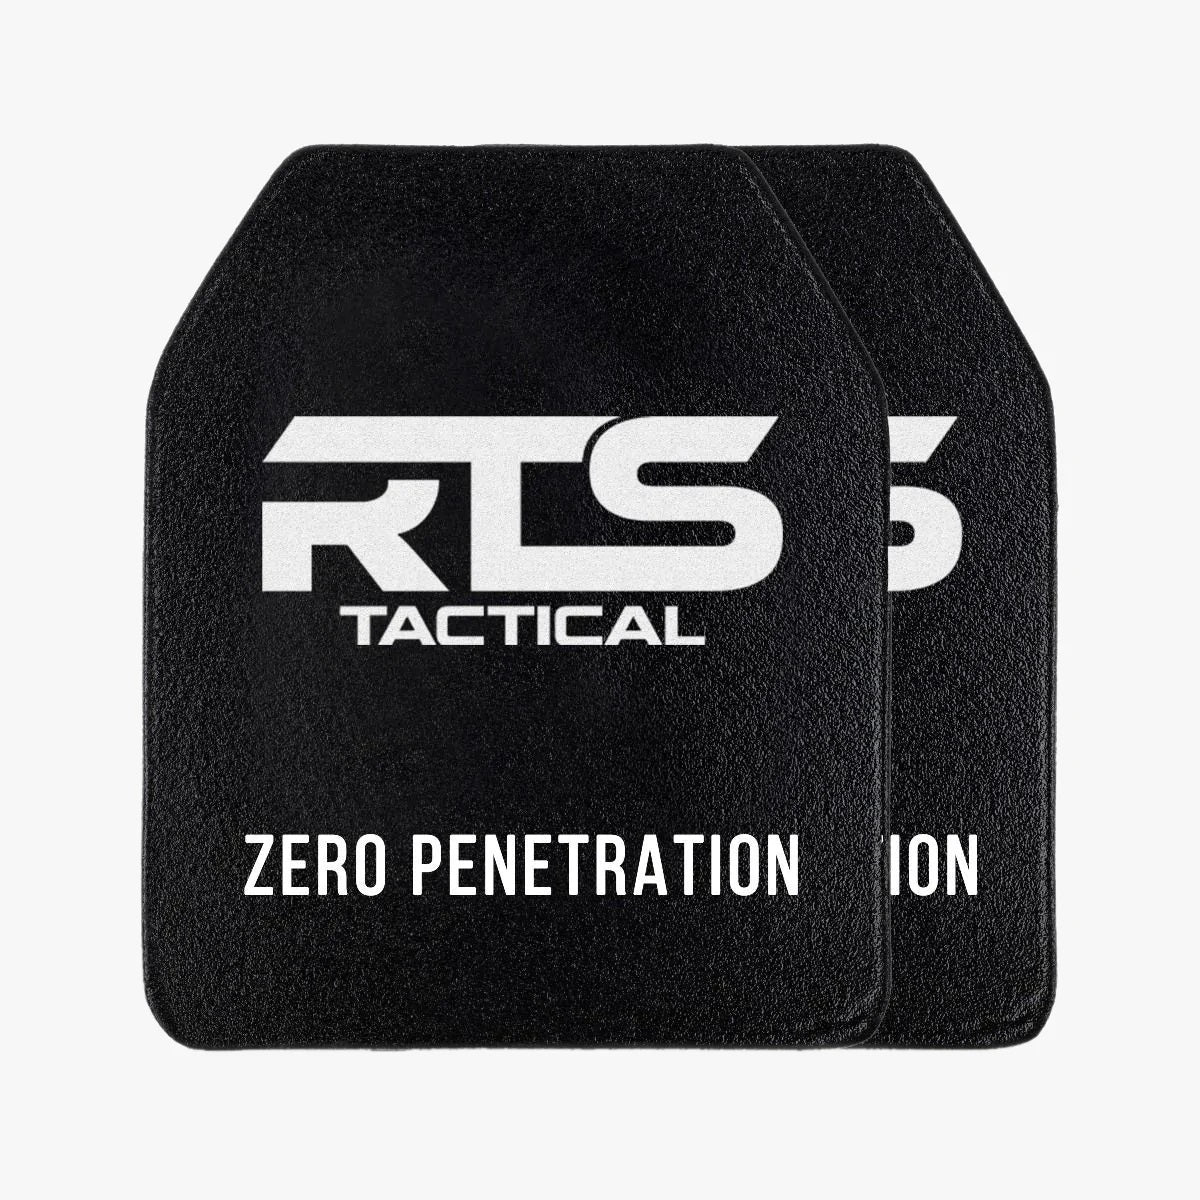 RTS Tactical Advanced Sleek 2.0 Level III+ Lightweight 5.9 LBS.